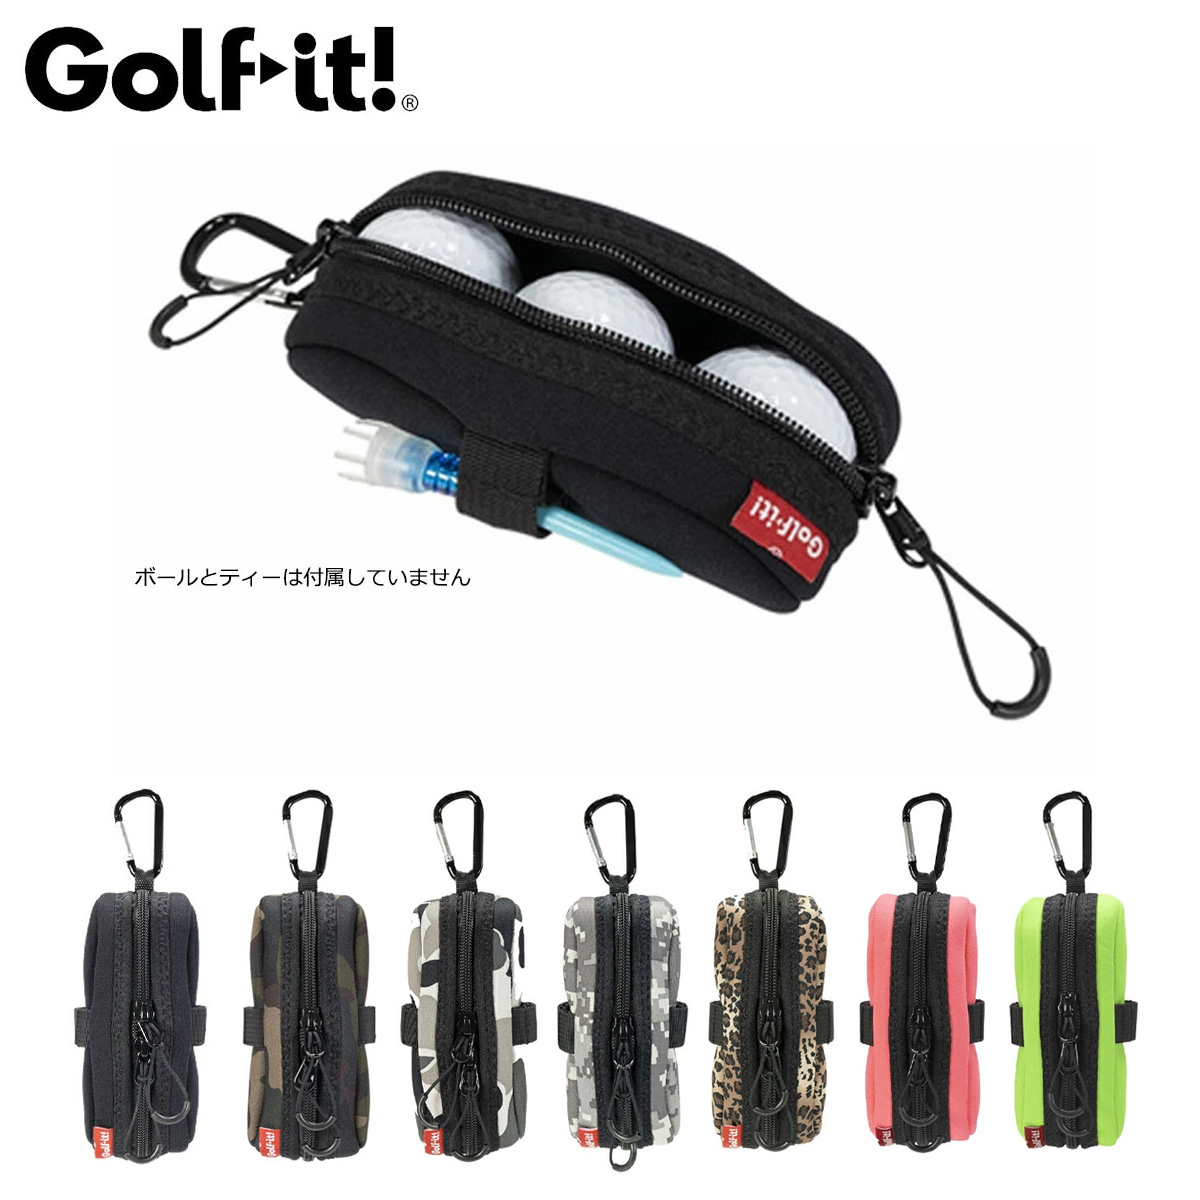 Golfit! ゴルフイット ライト正規品 カラビナ付きボールポーチ(3個収納可能) 2022モデル 「C-179」